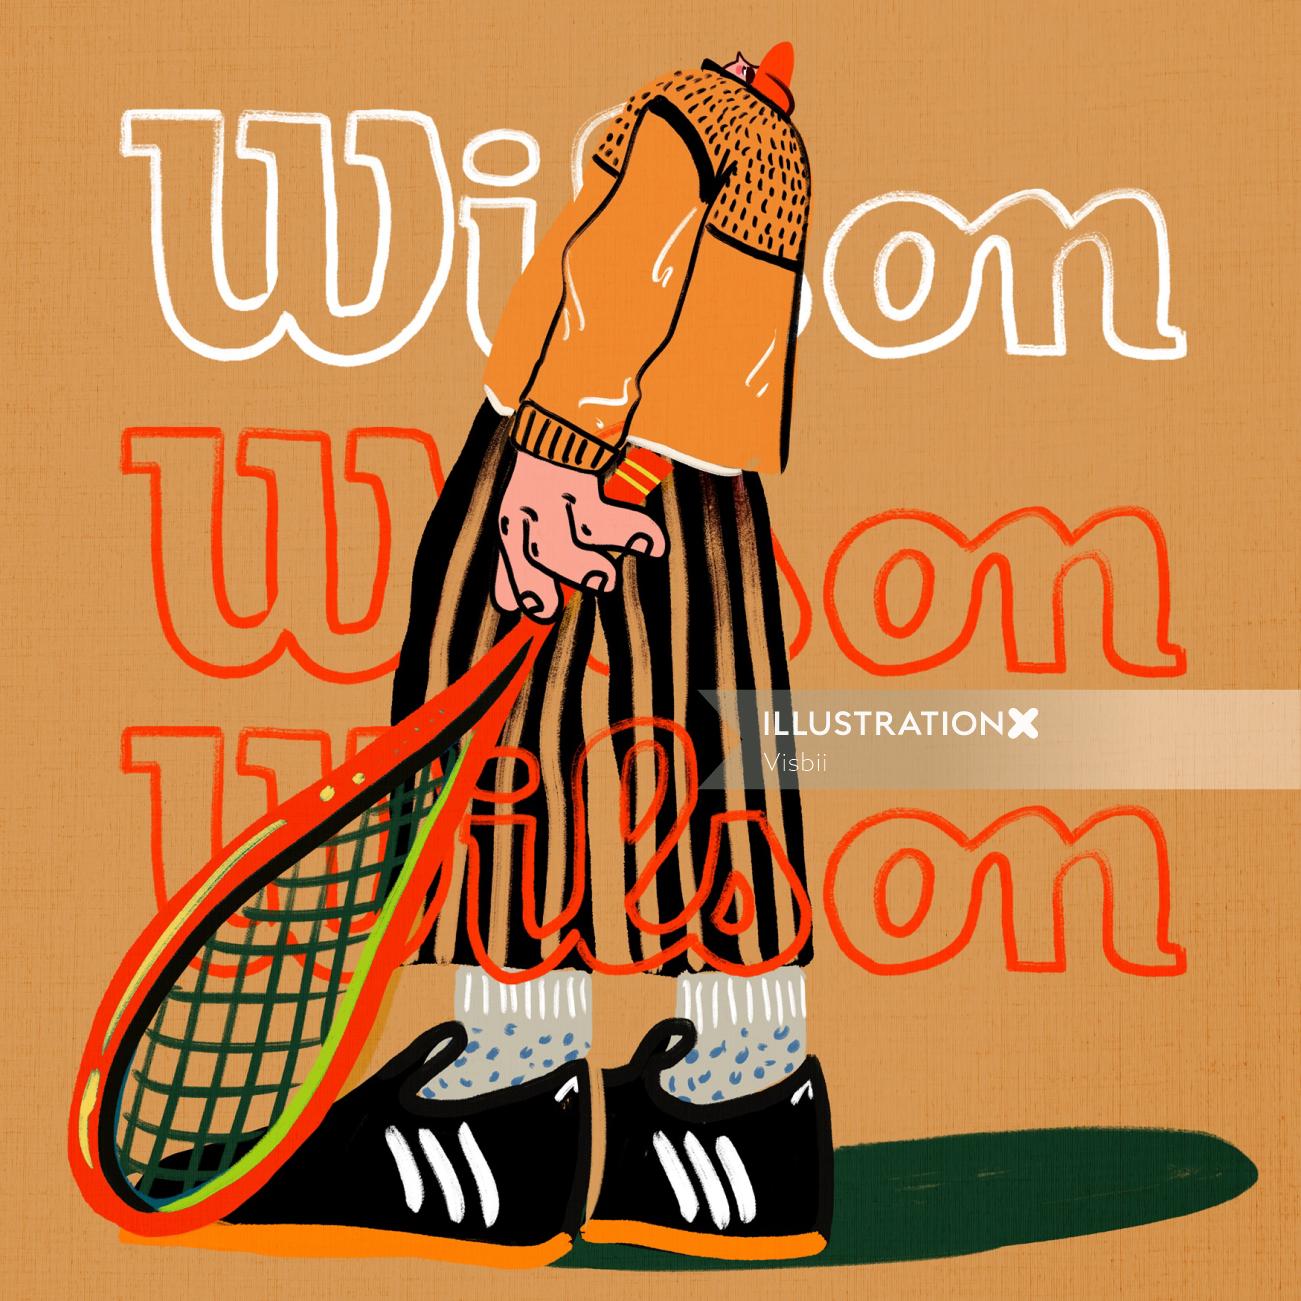 Ilustração publicitária da bola de tênis macia Wilson